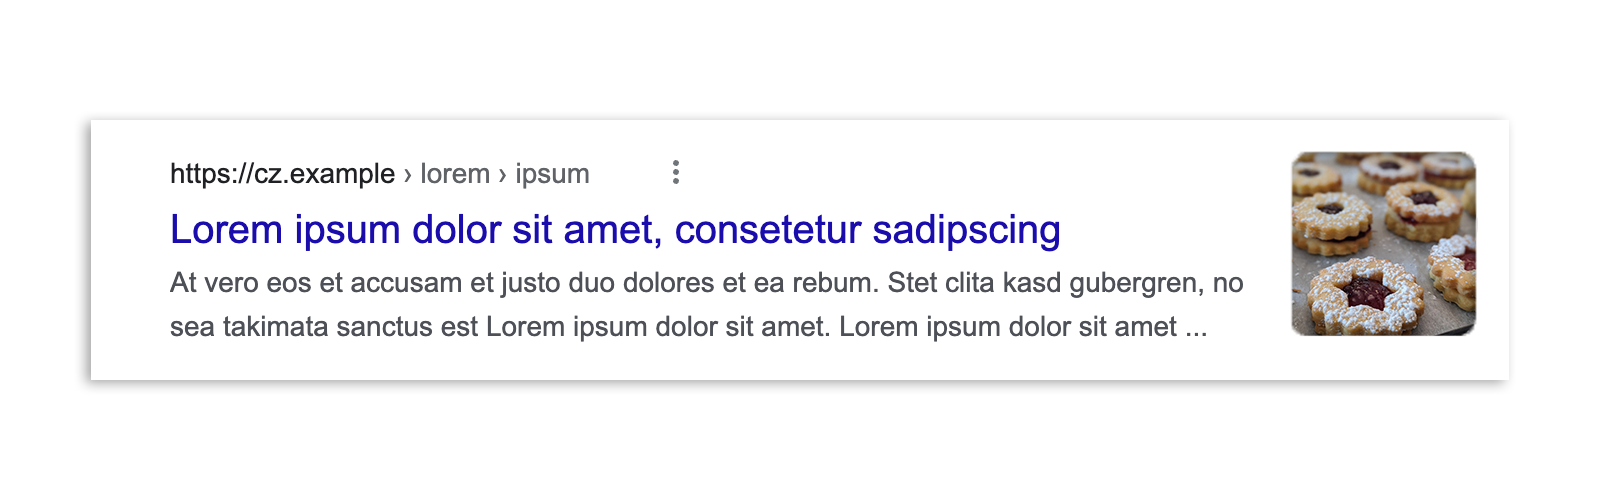 Ein Google-Suchergebnis in Tschechien vor der Verabschiedung des Gesetzes. Das Ergebnis umfasst ein Snippet des Artikels, eine Bildvorschau, die Schlagzeile und die URL.